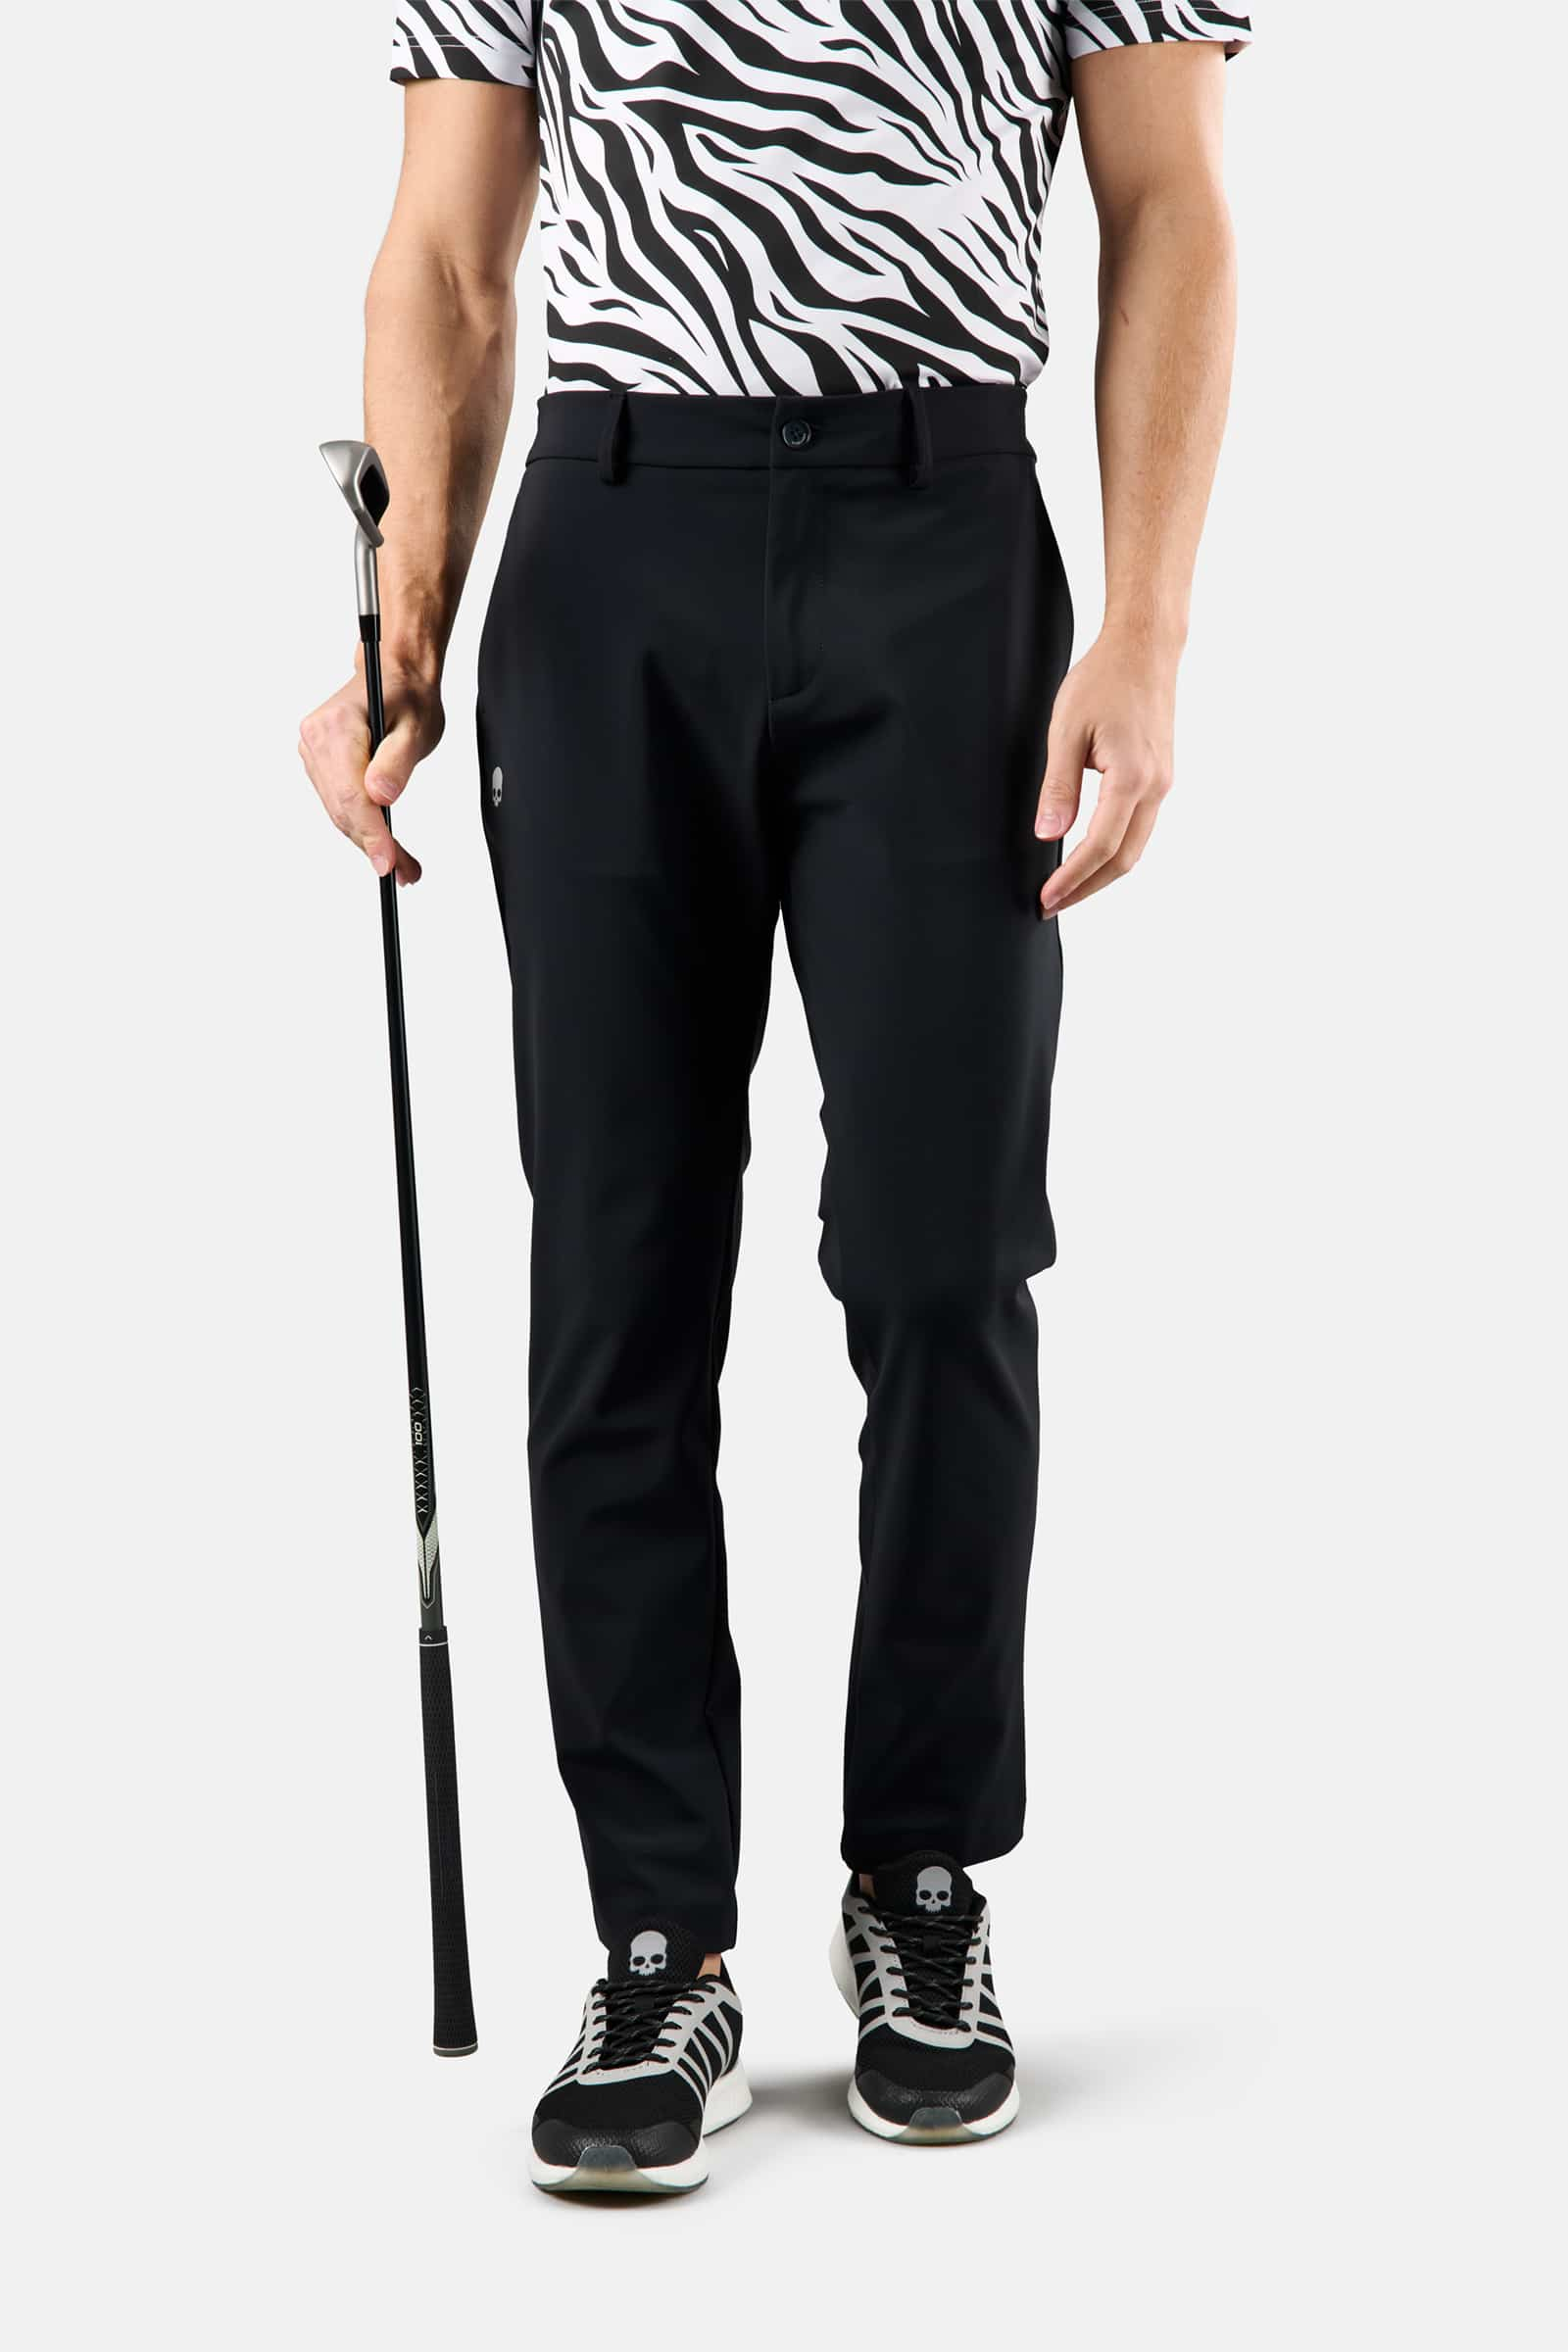 WINTER GOLF TECH PANTS - Apparel - Hydrogen - Luxury Sportwear